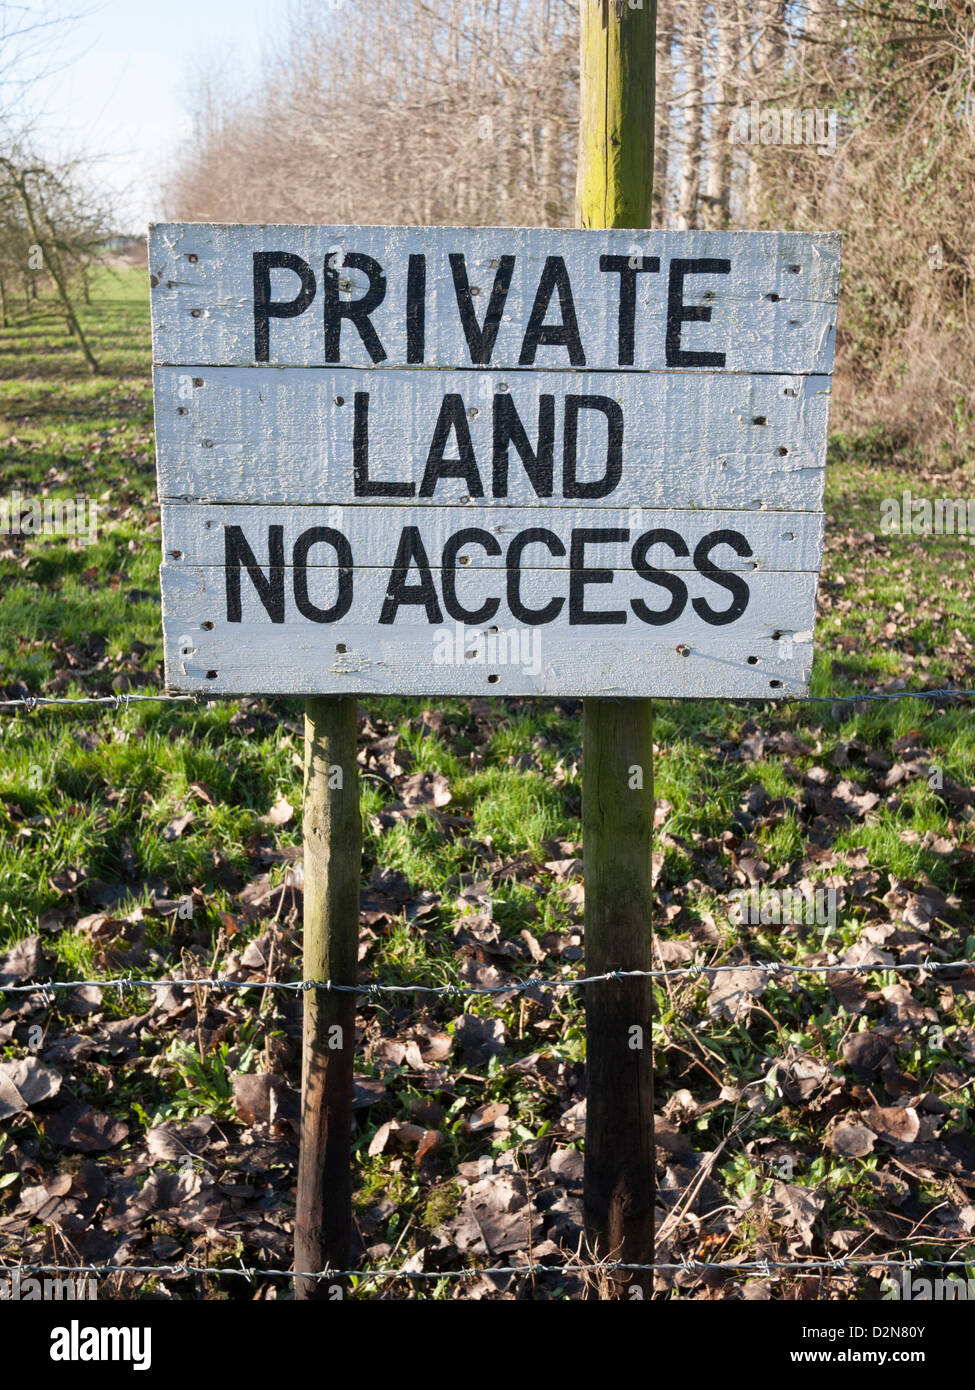 Les terres privées aucun accès inscription peinte sur une carte dans un verger Anglais UK Banque D'Images